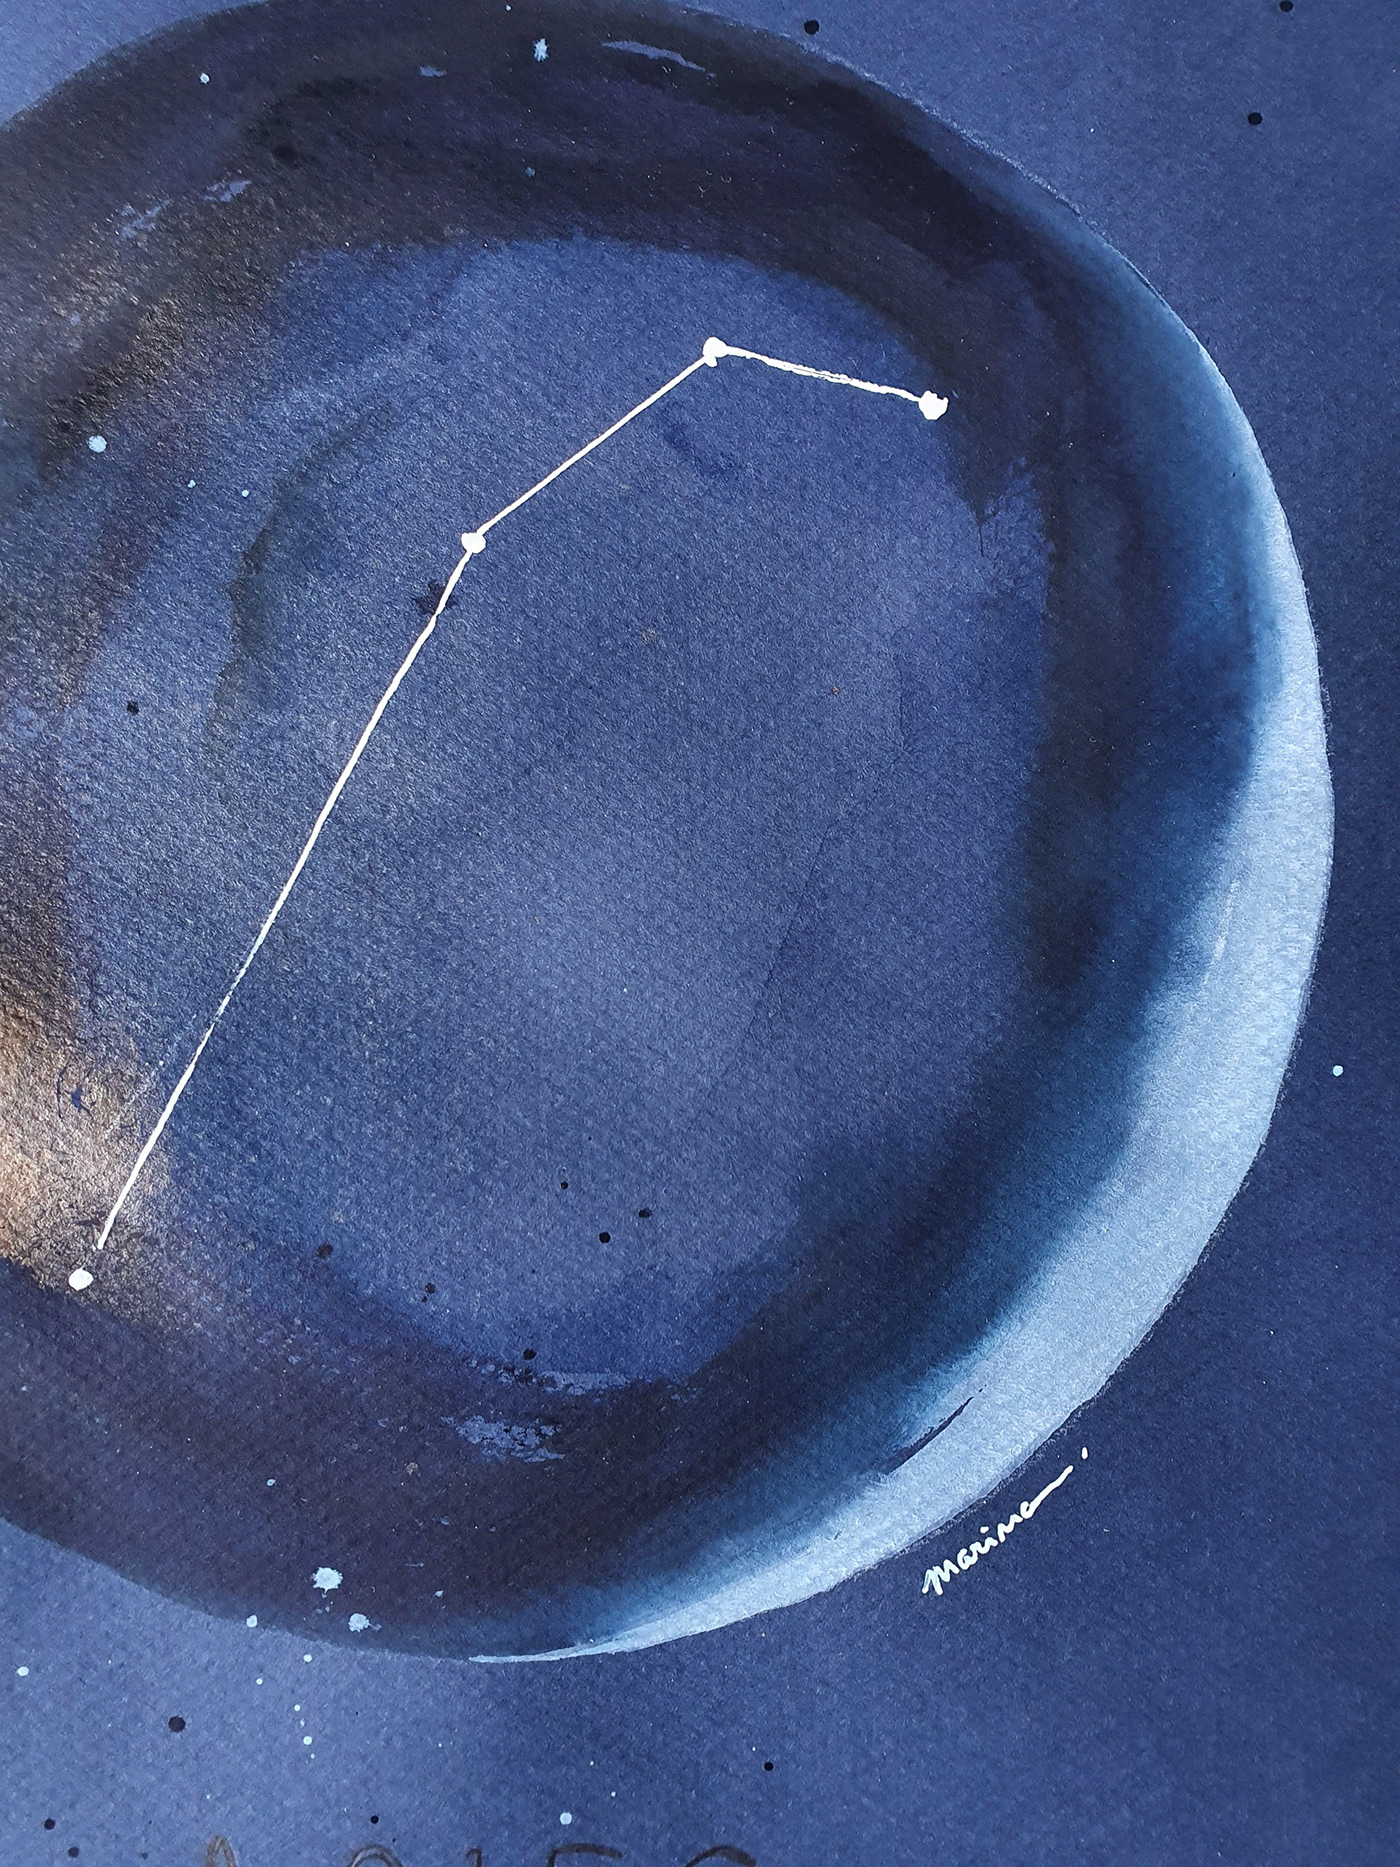 acrilico acuarelas arte astrologia constelaciones horóscopos tonalidadesazules universo